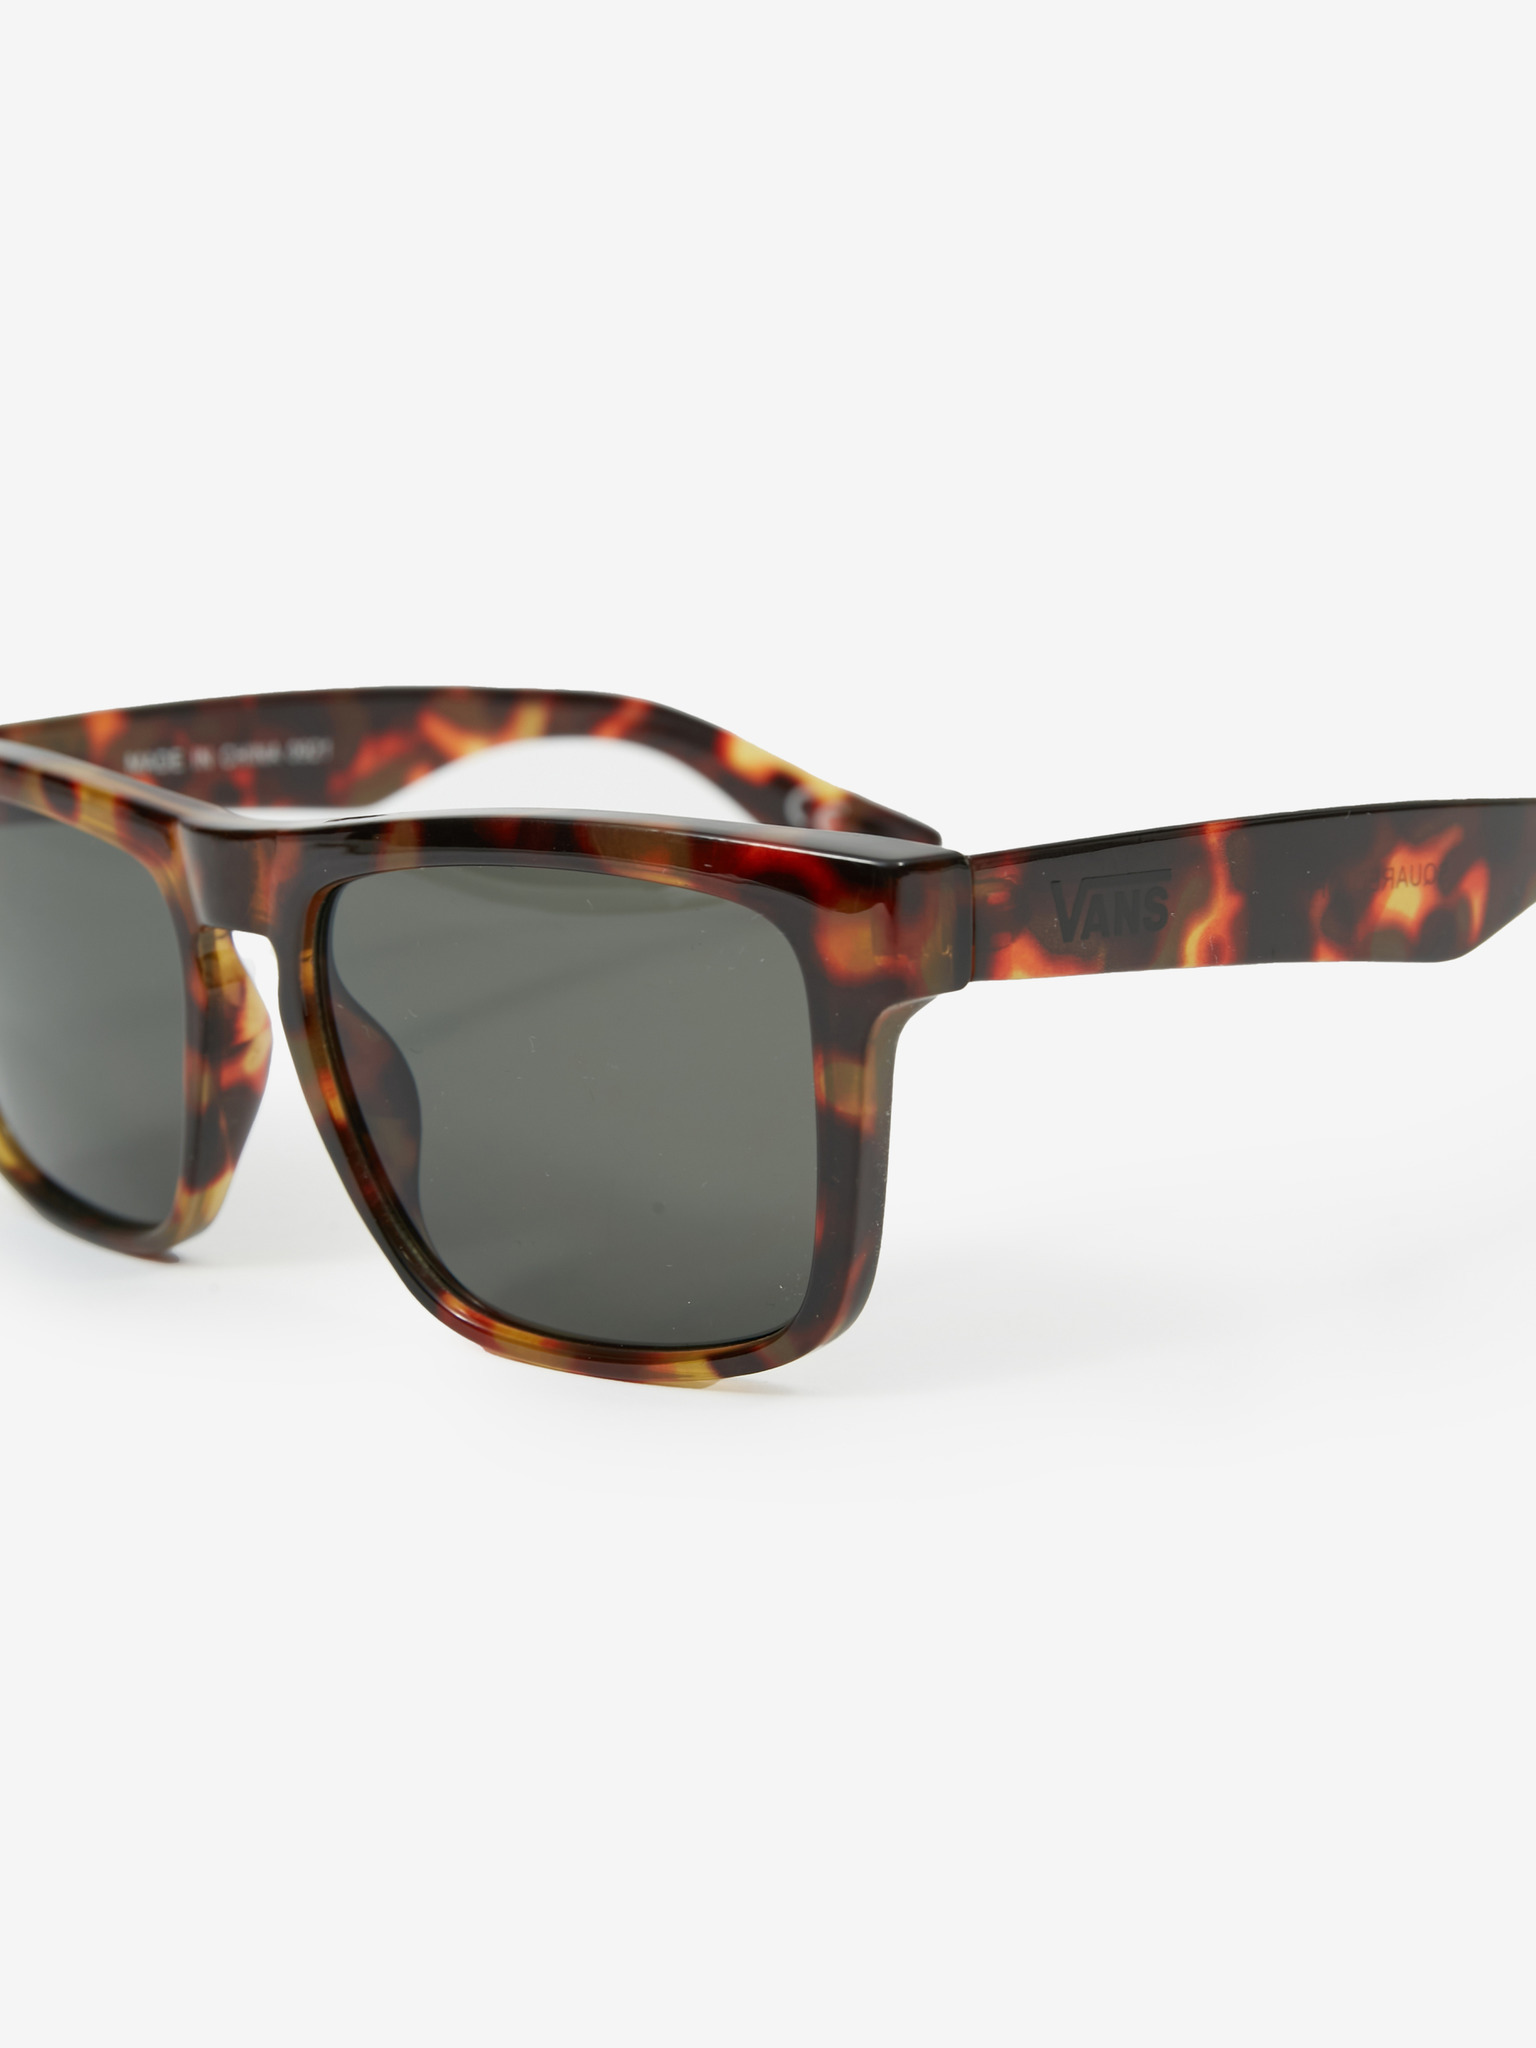 Vans - Squared Off Sunglasses | Sonnenbrillen